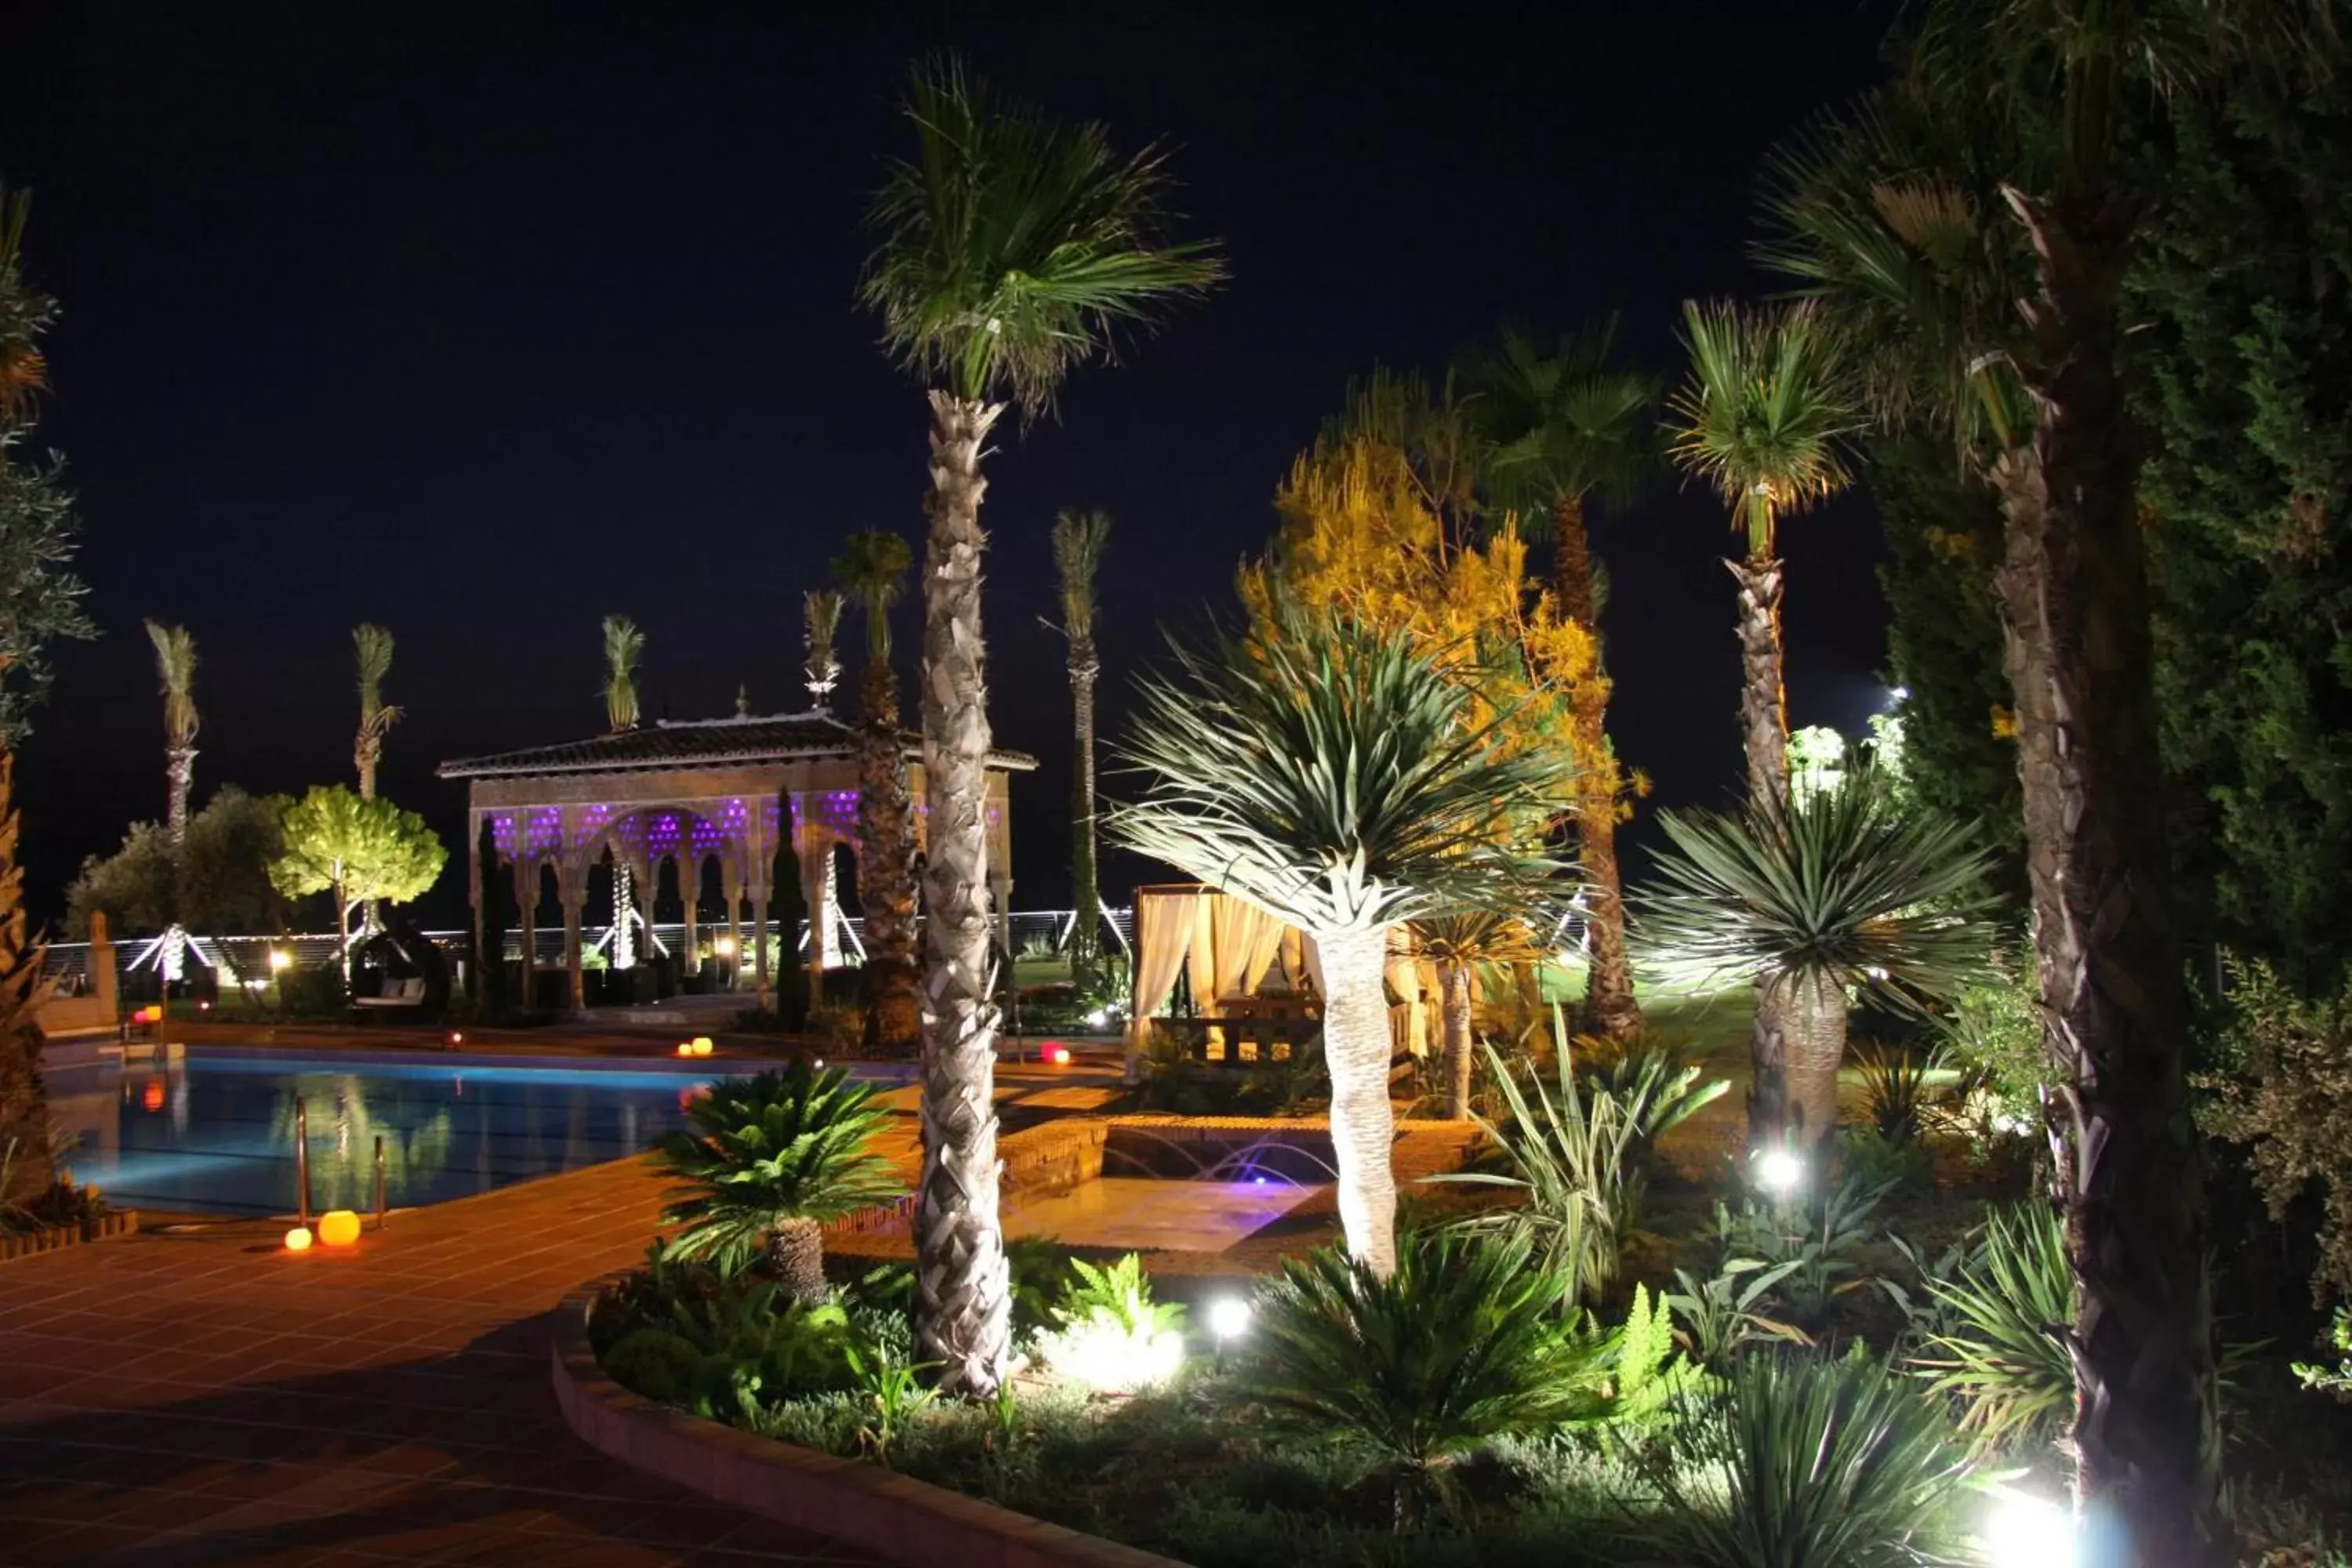 Night, Pool View in Hotel El Mirador